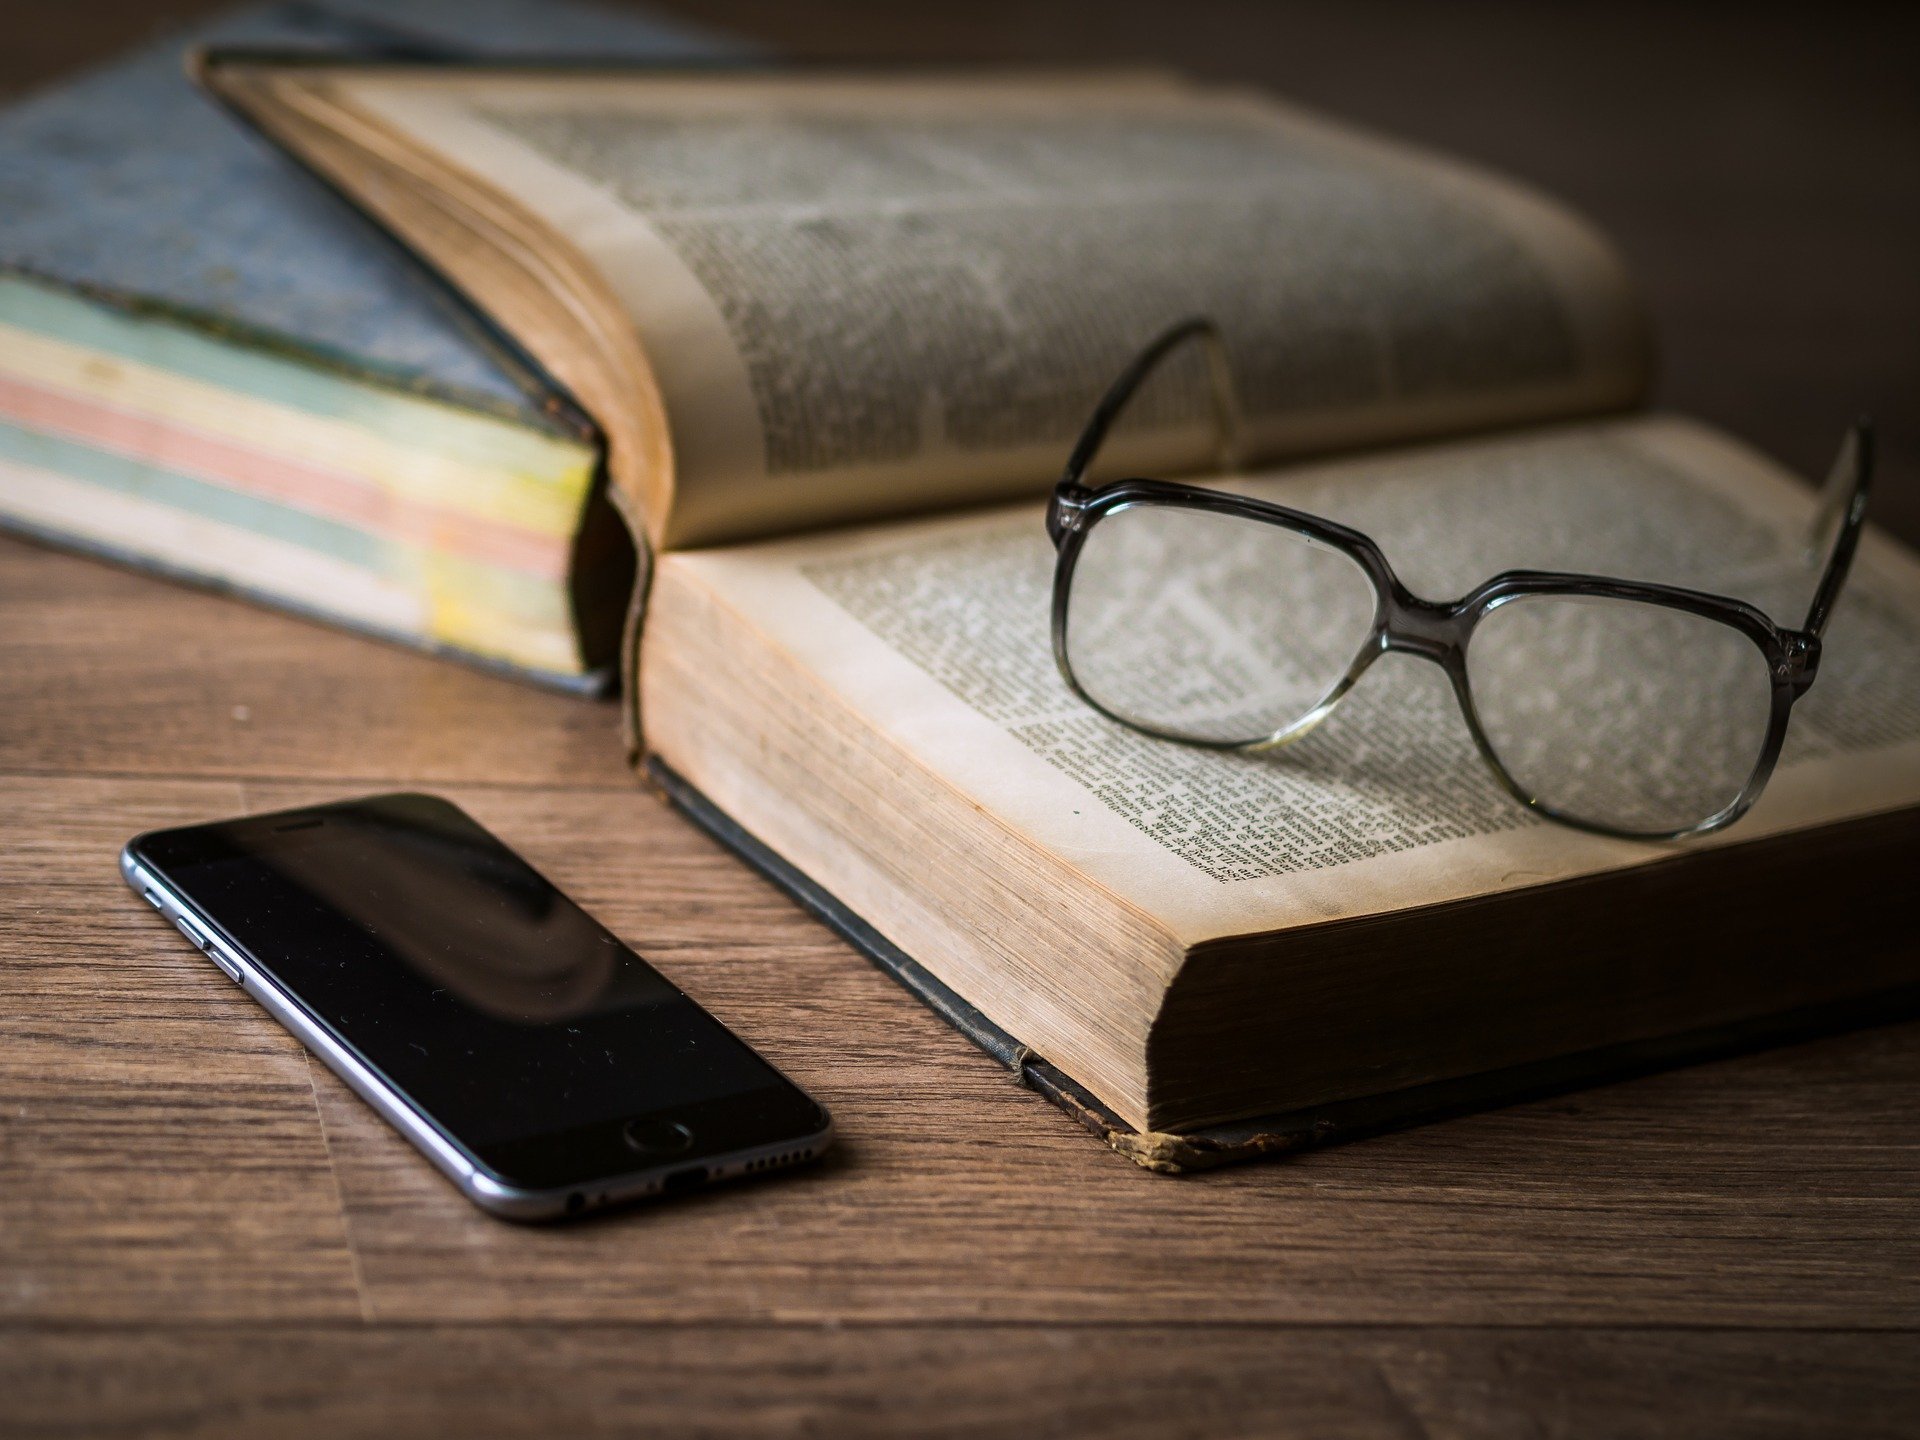 Un teléfono móvil, junto a un libro y unas gafas.